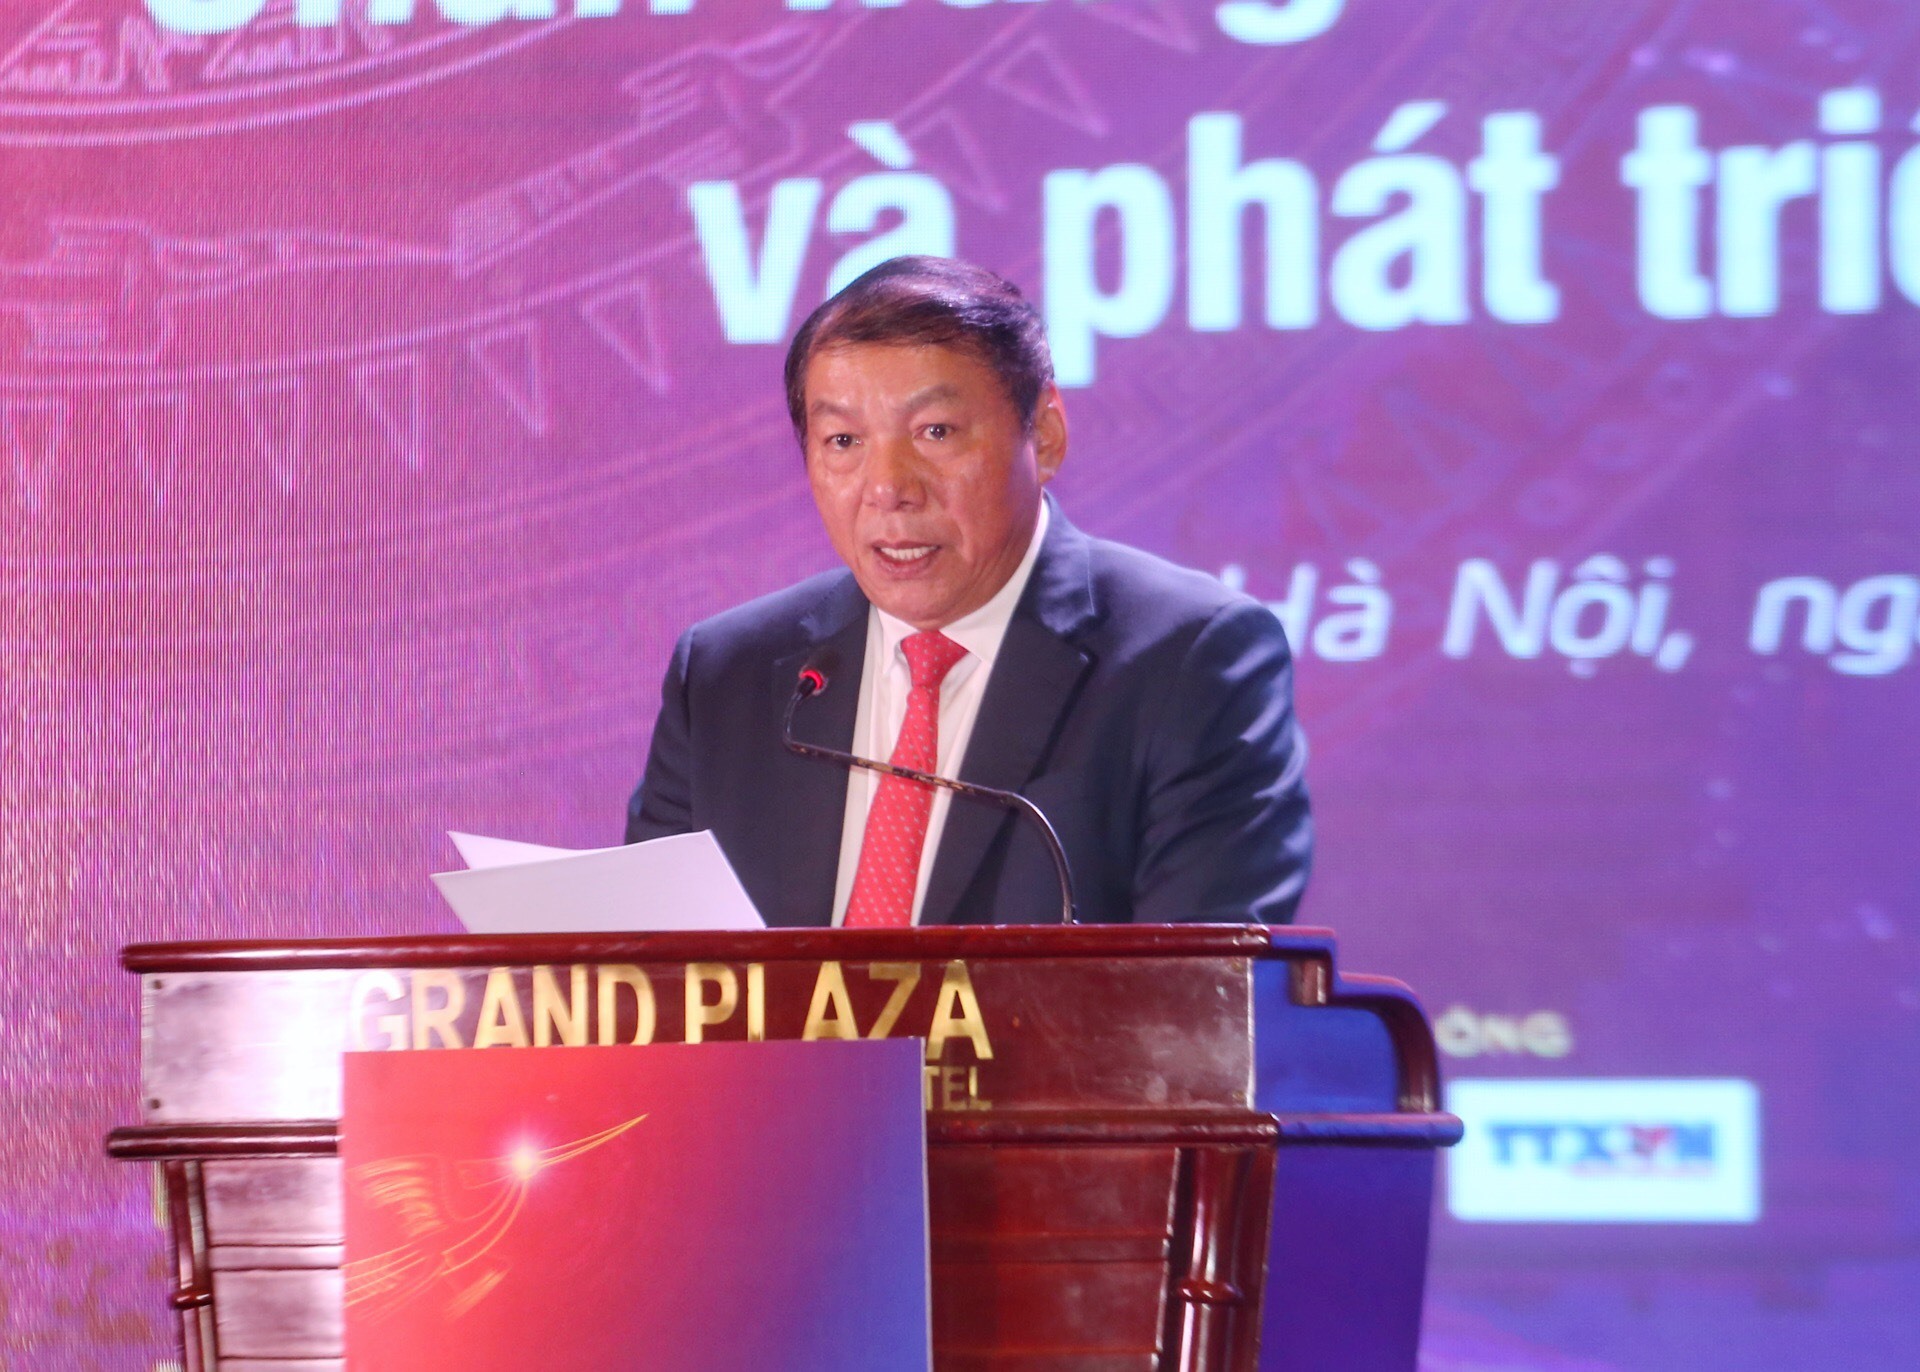 Bộ trưởng Bộ Văn hóa, Thể thao và Du lịch phát biểu khai mạc diễn đàn “Văn hóa với doanh nghiệp” sáng 3.12 tại Hà Nội. Ảnh: Tuấn Đức